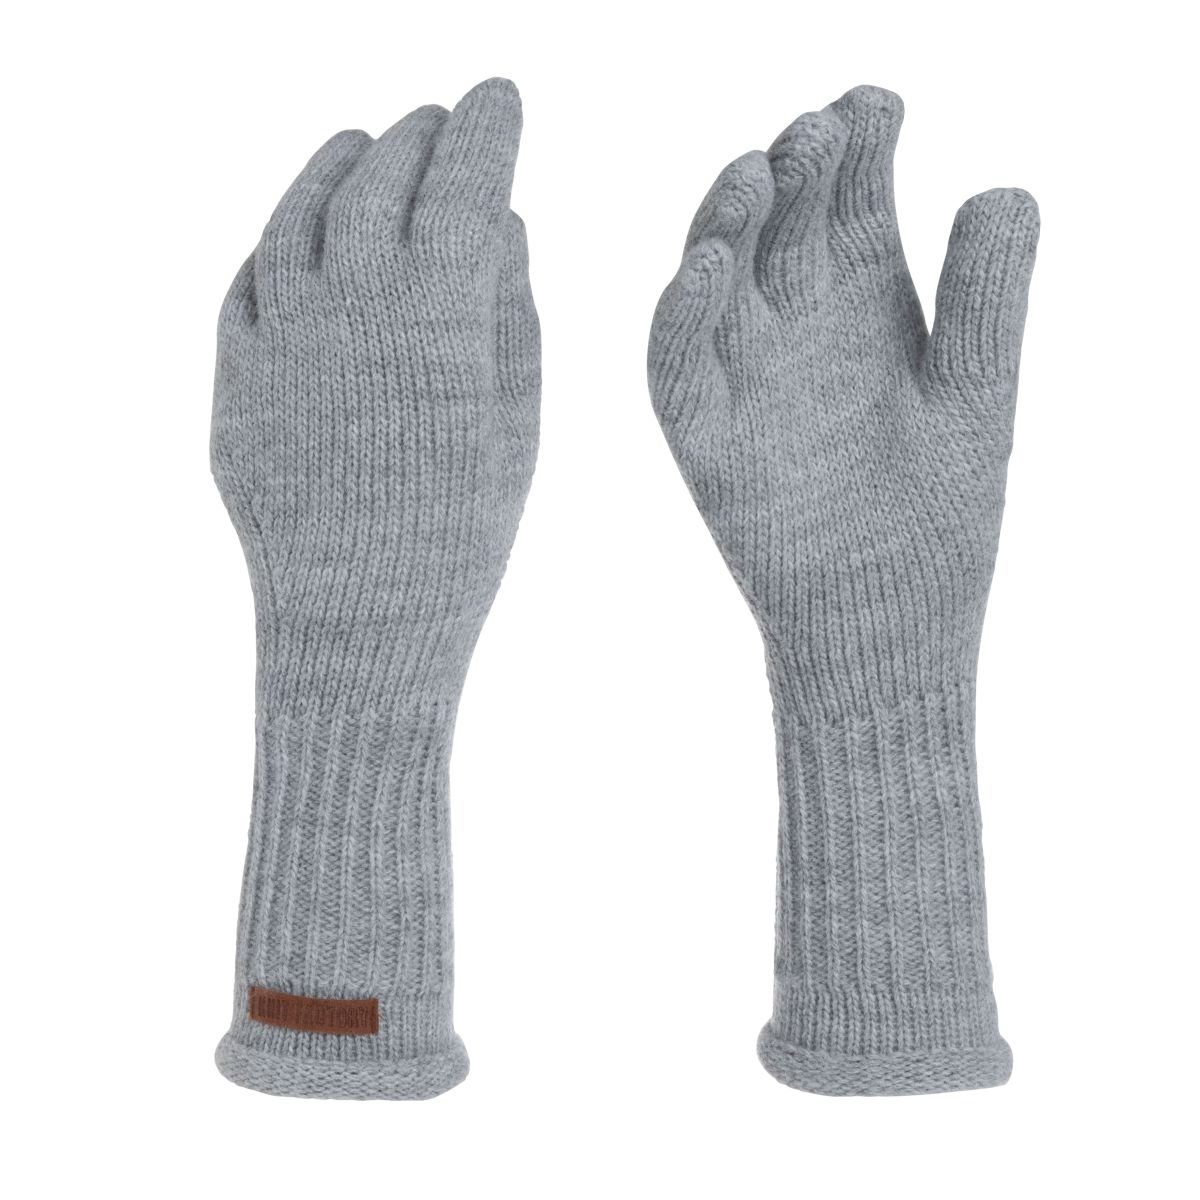 Glatt Grau Handschuhe Handschuhe Factory Lana Knit Handschuhe One ihne Size Strickhandschuhe Handstulpen Finger